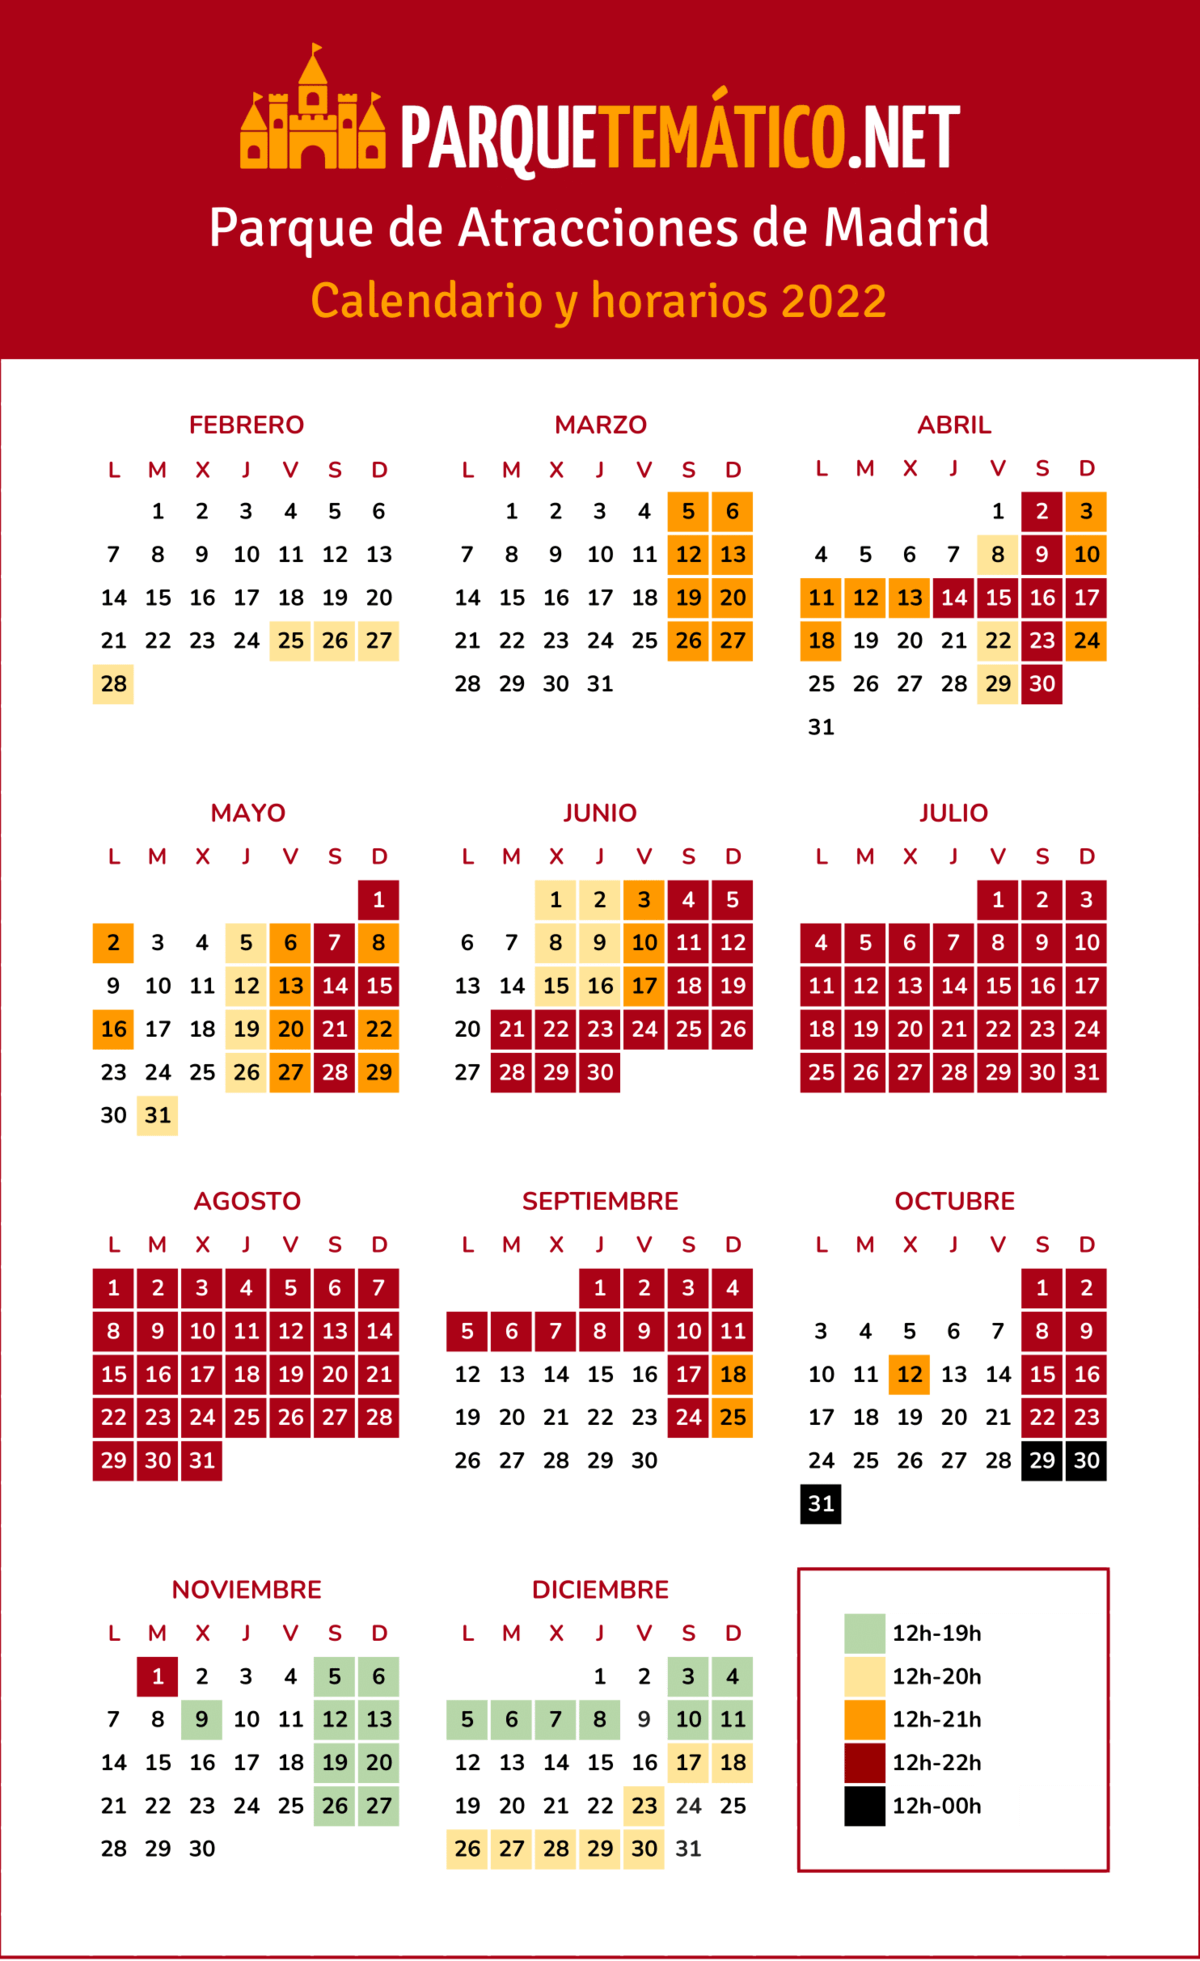 Calendario y horarios de apertura Parque de Atracciones de Madrid 2022